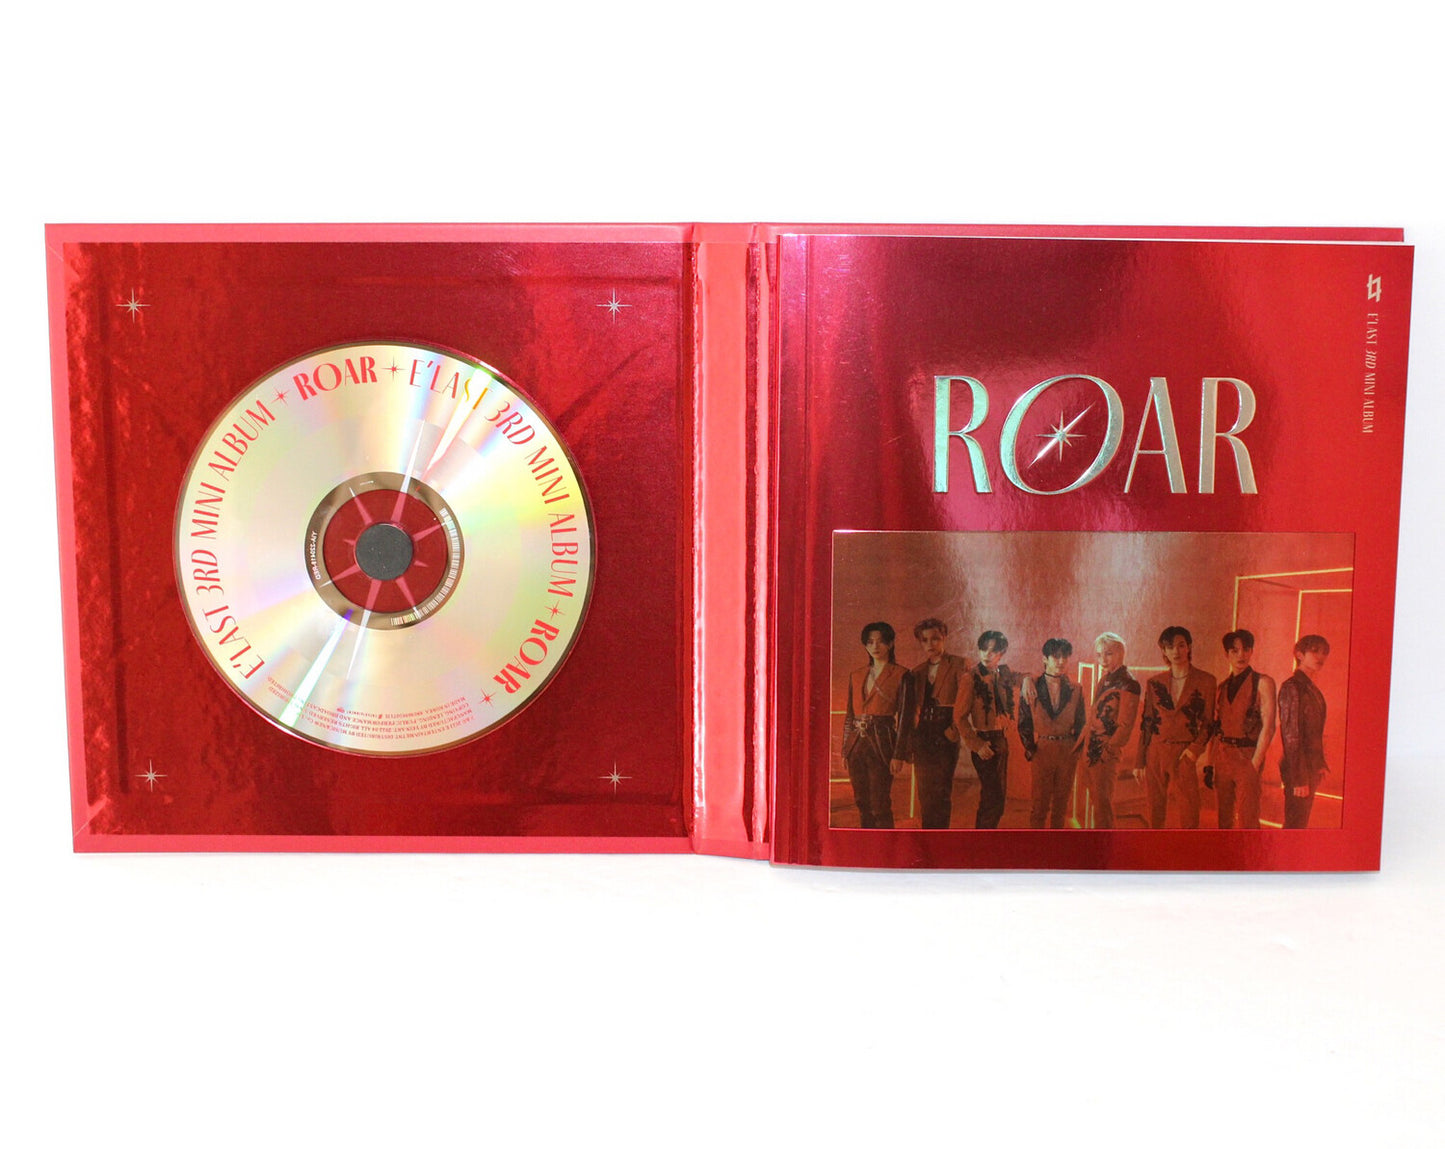 E'LAST 3e Mini Album : Roar | Version rouge.